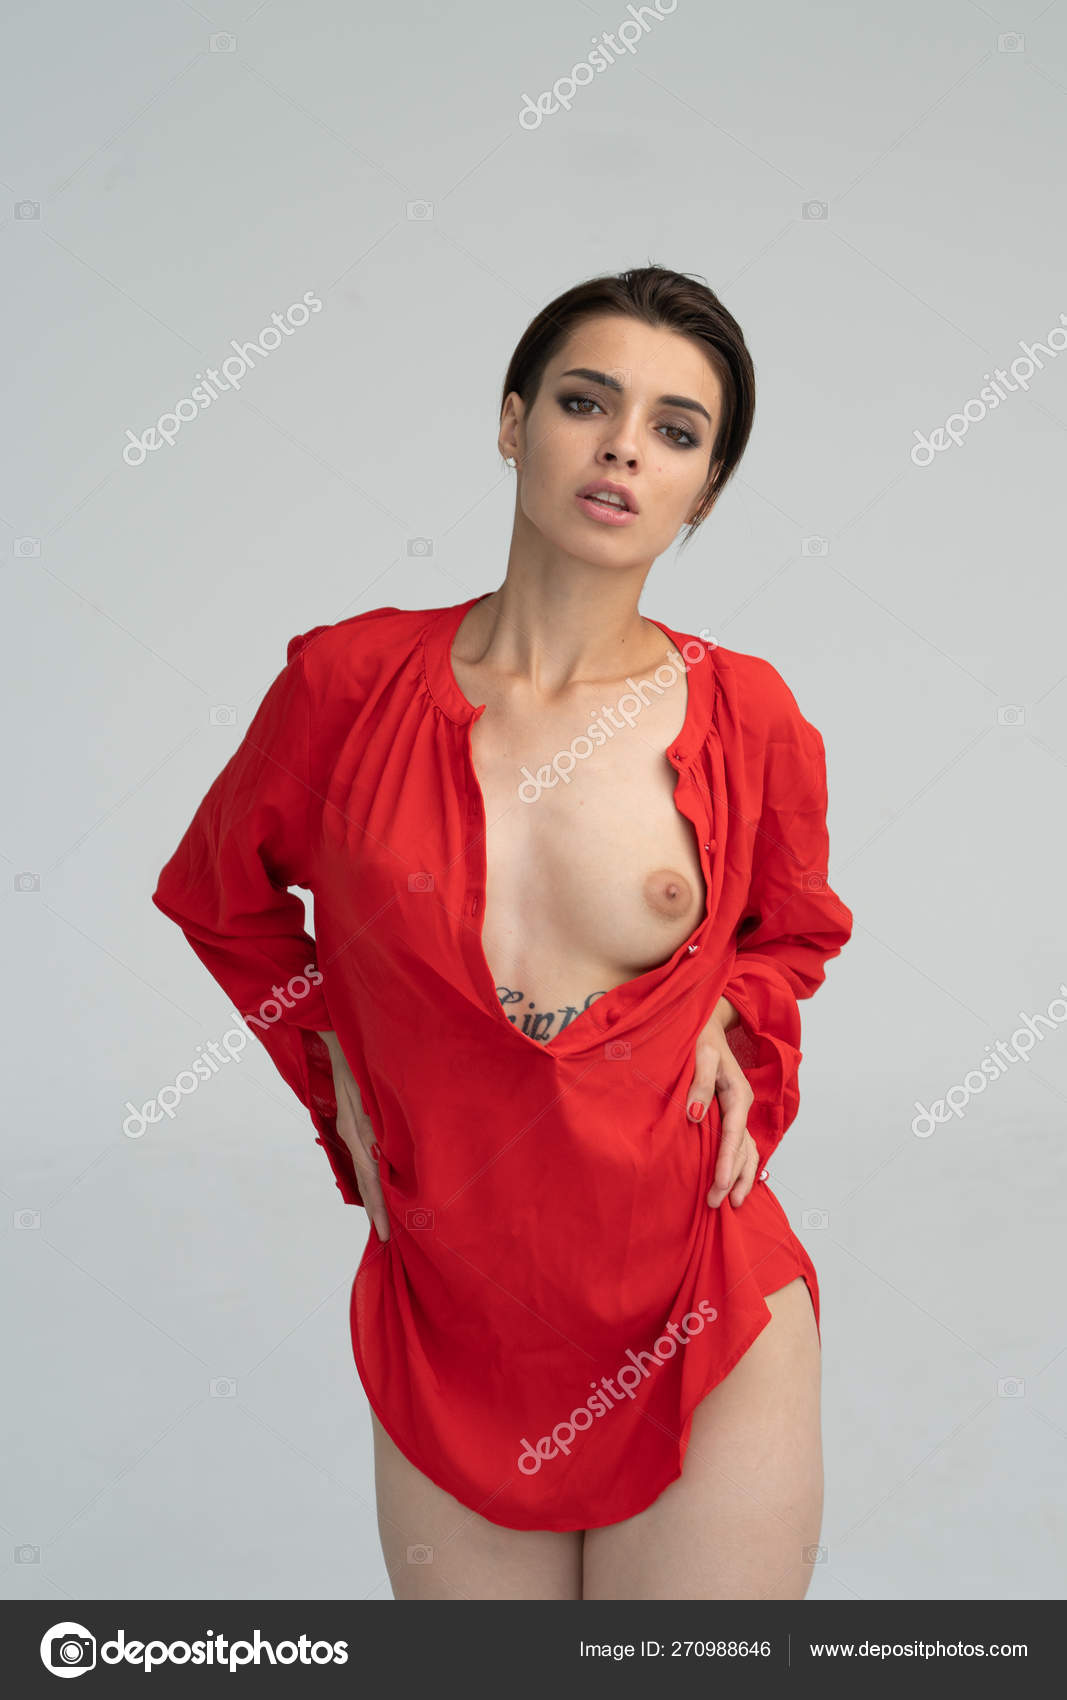 https://st4n.depositphotos.com/10086424/27098/i/1600/depositphotos_270988646-stock-photo-young-beautiful-girl-posing-nude.jpg